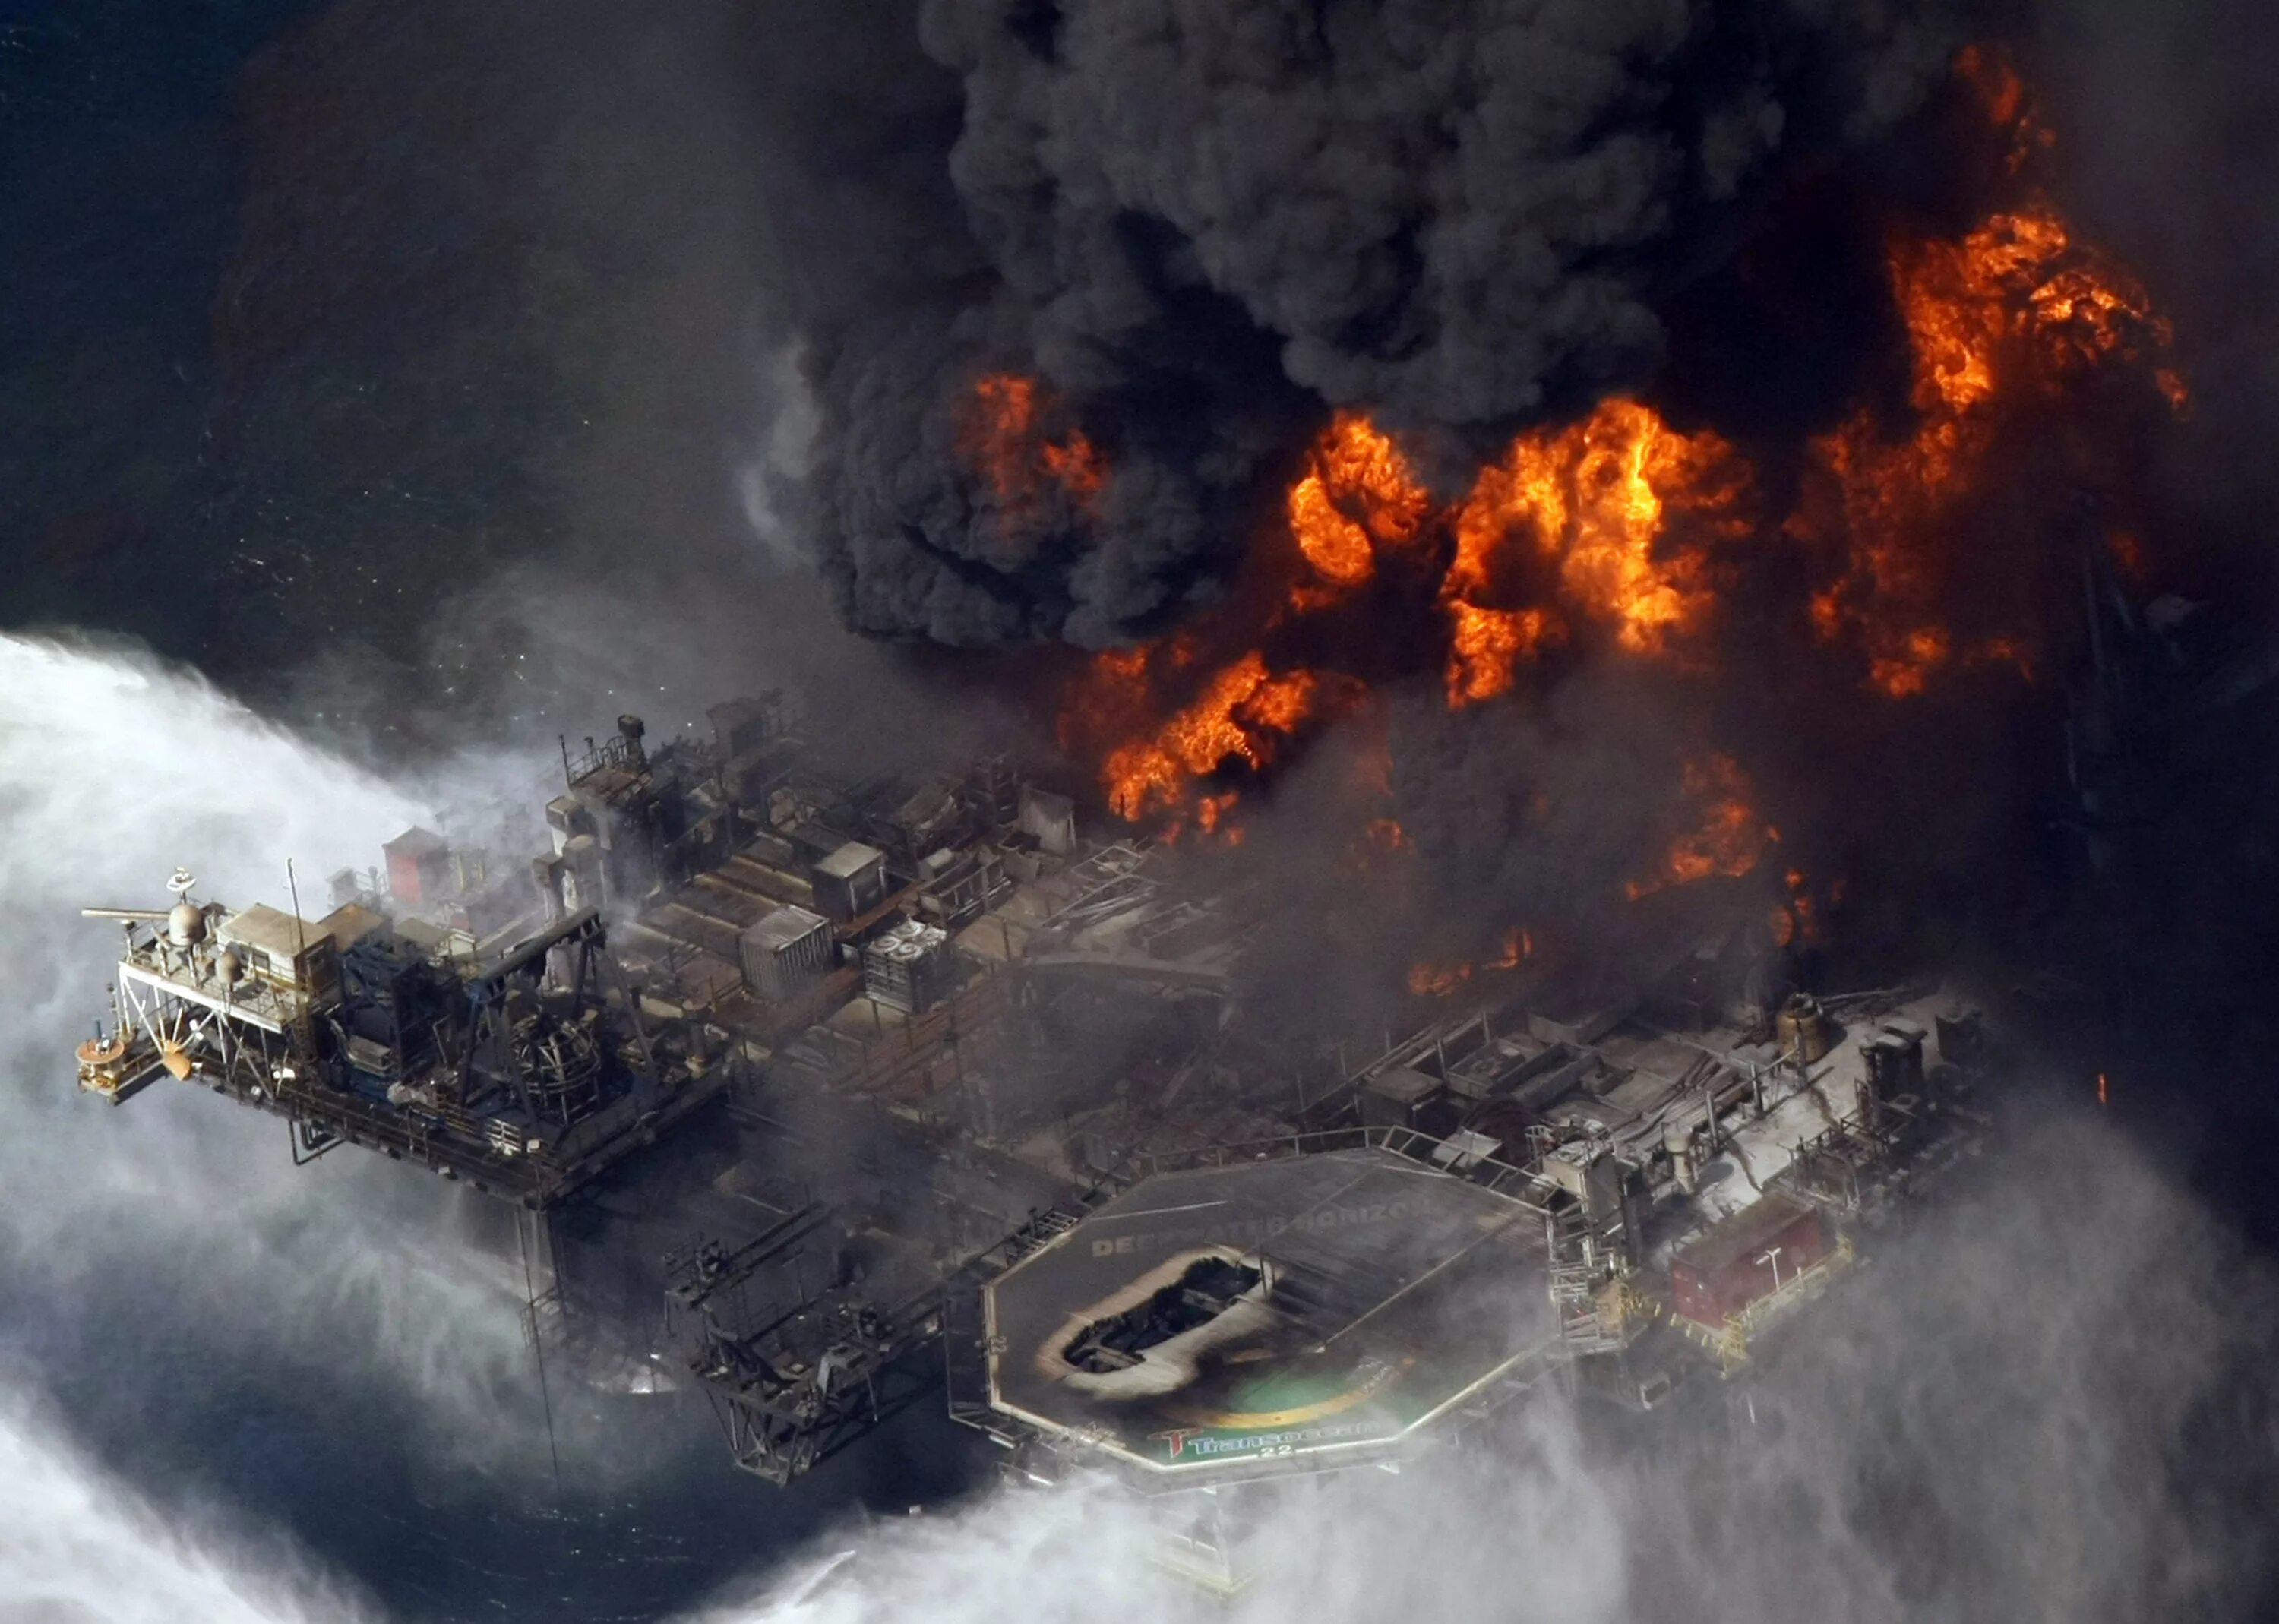 Взрыв в мексиканском заливе авария на нефтяной платформе Deepwater Horizon. Взрыв нефтяной платформы Deepwater Horizon - 20 апреля 2010 года. Катастрофа Deepwater Horizon в мексиканском заливе. Взрыв нефтяной платформы Deepwater Horizon в мексиканском заливе 2010. Грозящая катастрофа